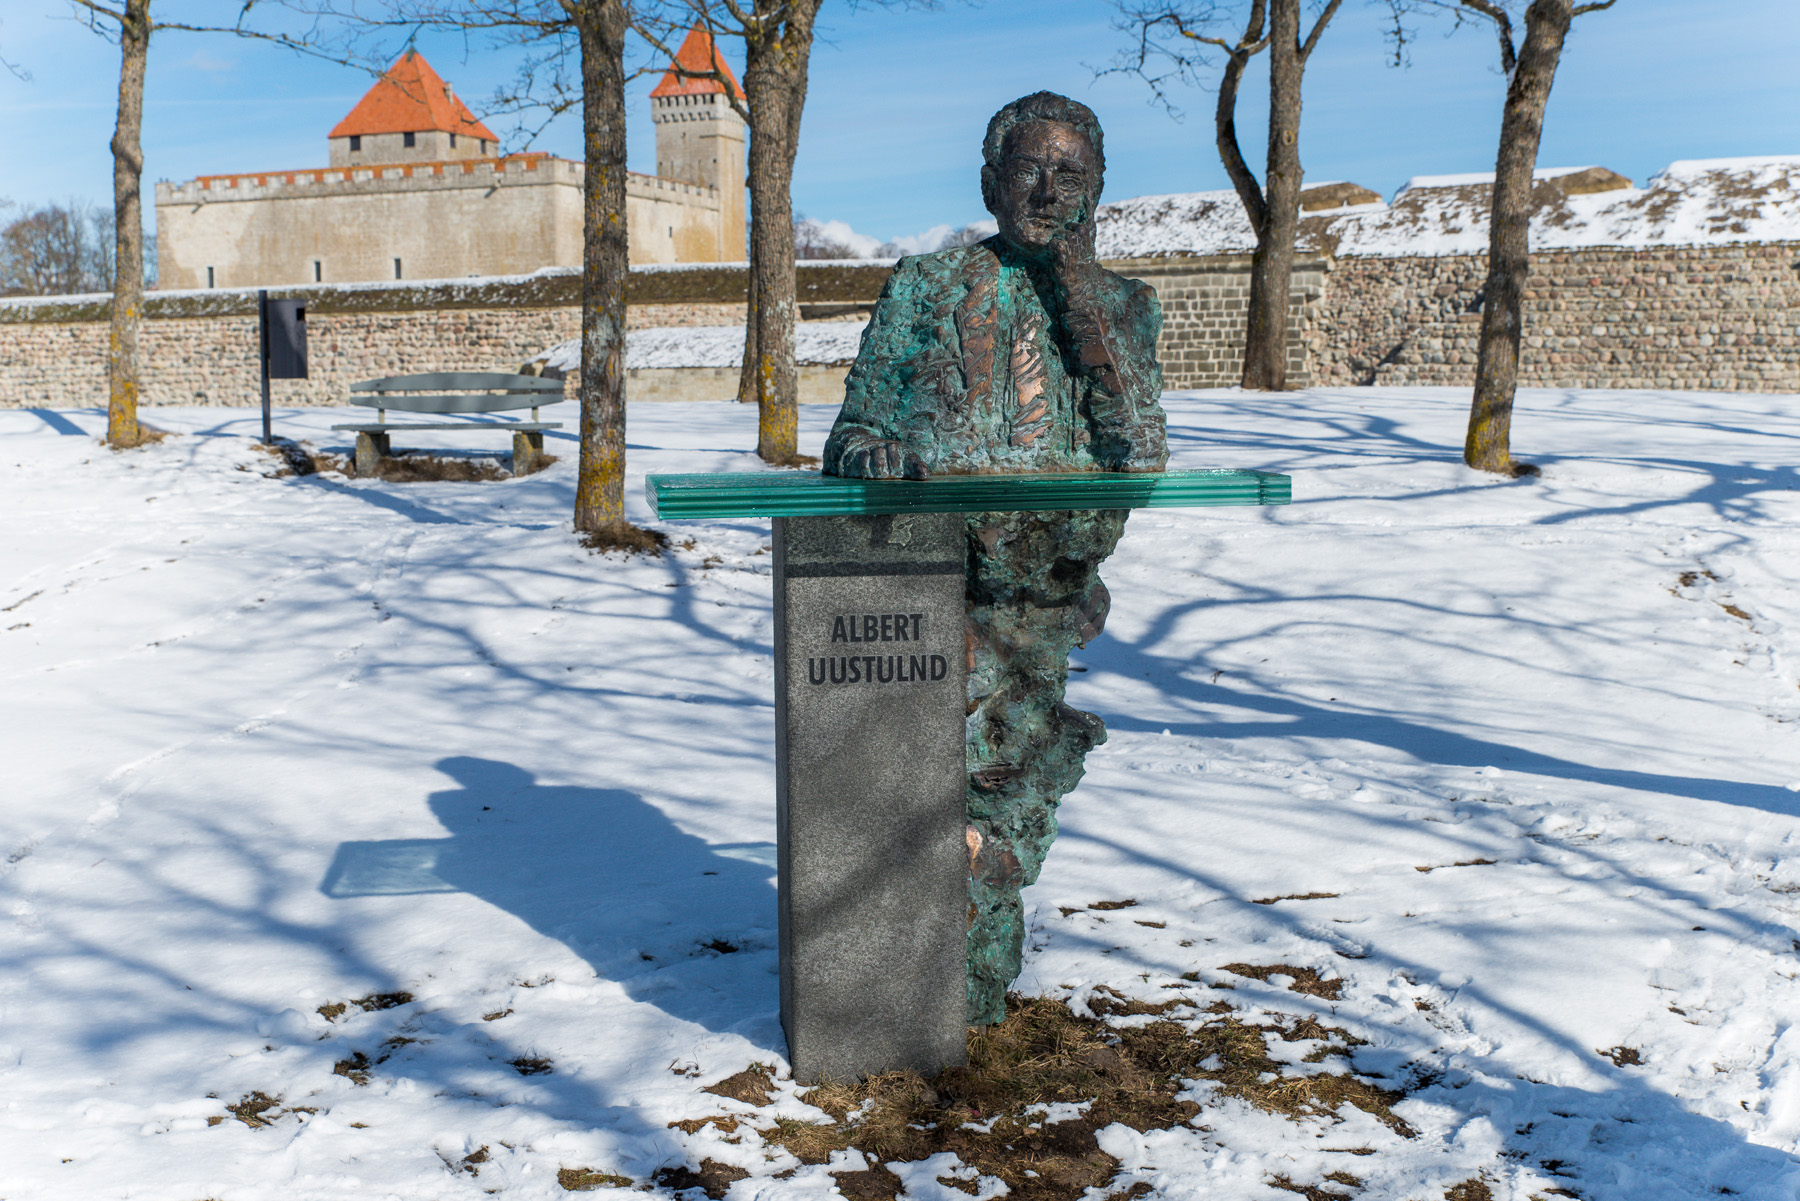 20160320-Saaremaa-563-Kuressaare.jpg - 18.-20. märts 2016. Saaremaa ringreis. Kuressaare